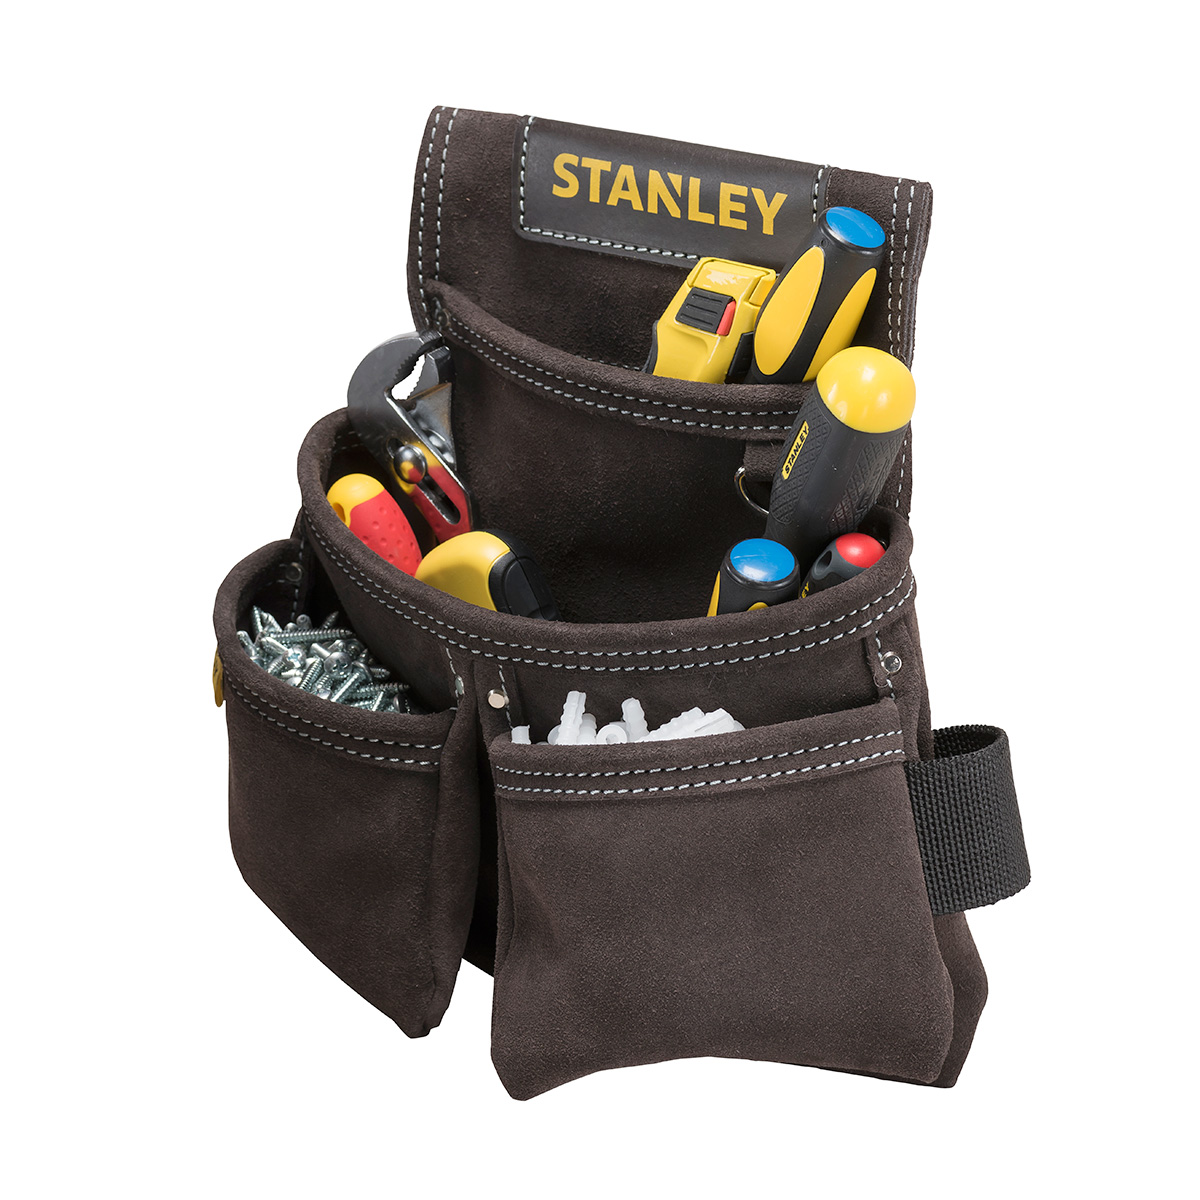 Bolsa de piel Stanley para clavos con 2 bolsillos para cinturón